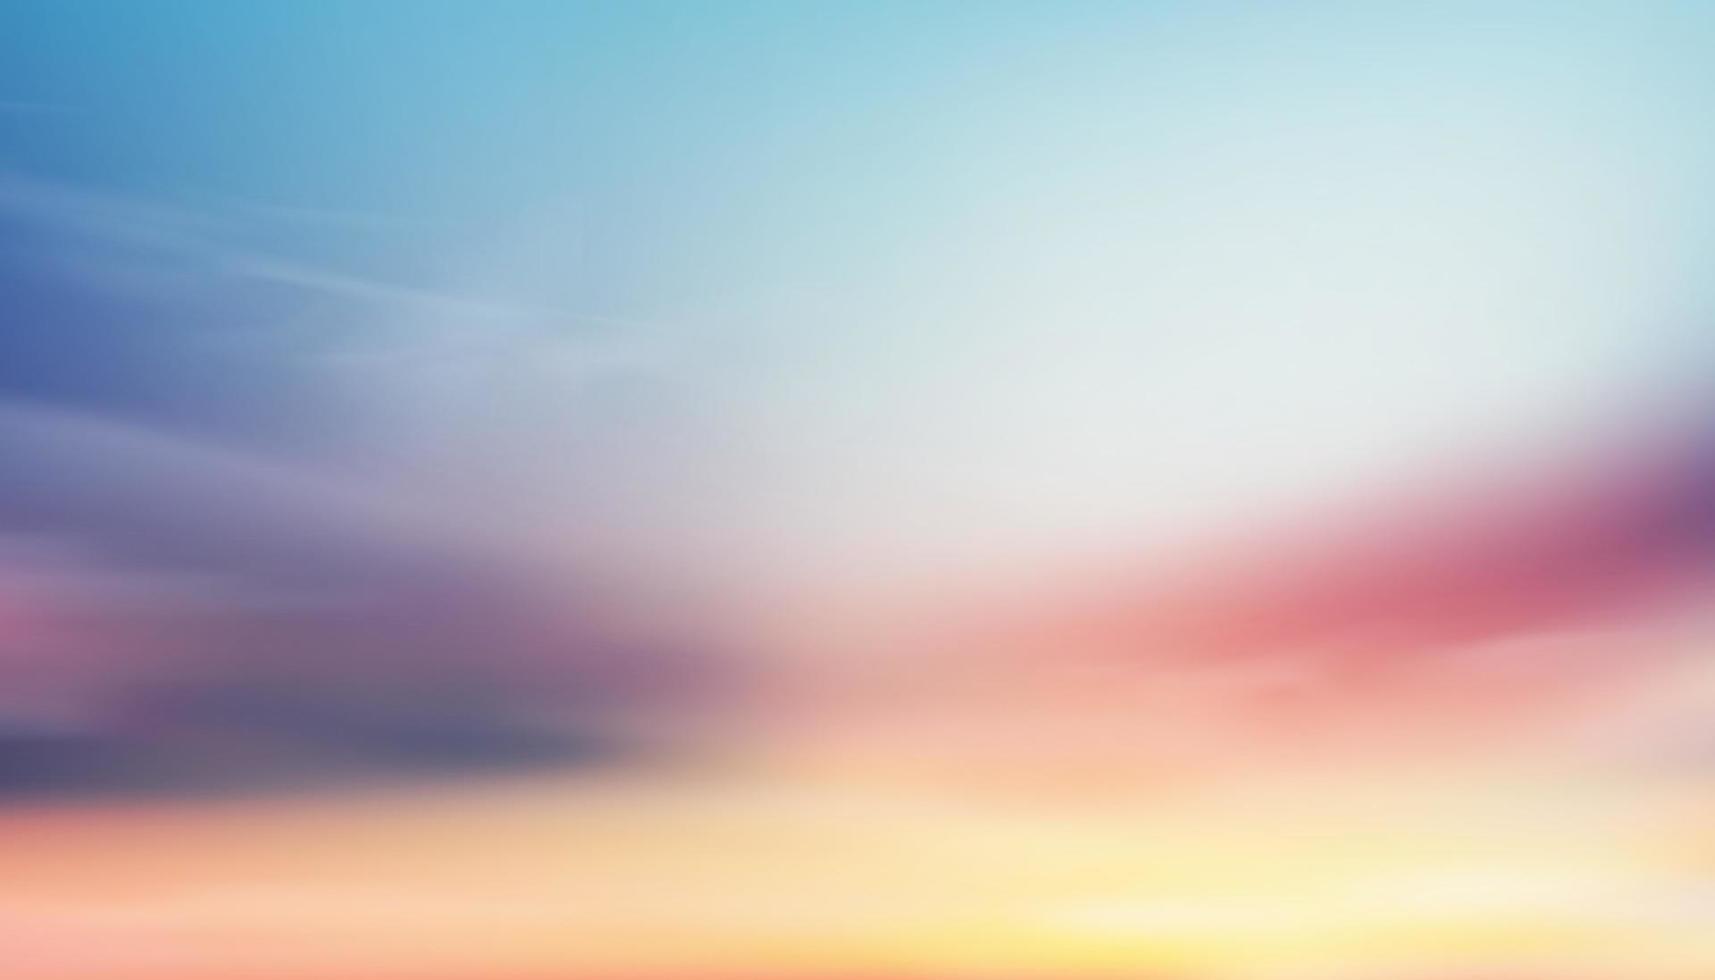 kleurrijke bewolkte hemel met pluizige wolken met pasteltint in blauw, roze en oranje in de ochtend, fantasie magische avondrood op lente of zomer, vector illustratie zoete achtergrond voor vier seizoenen banner